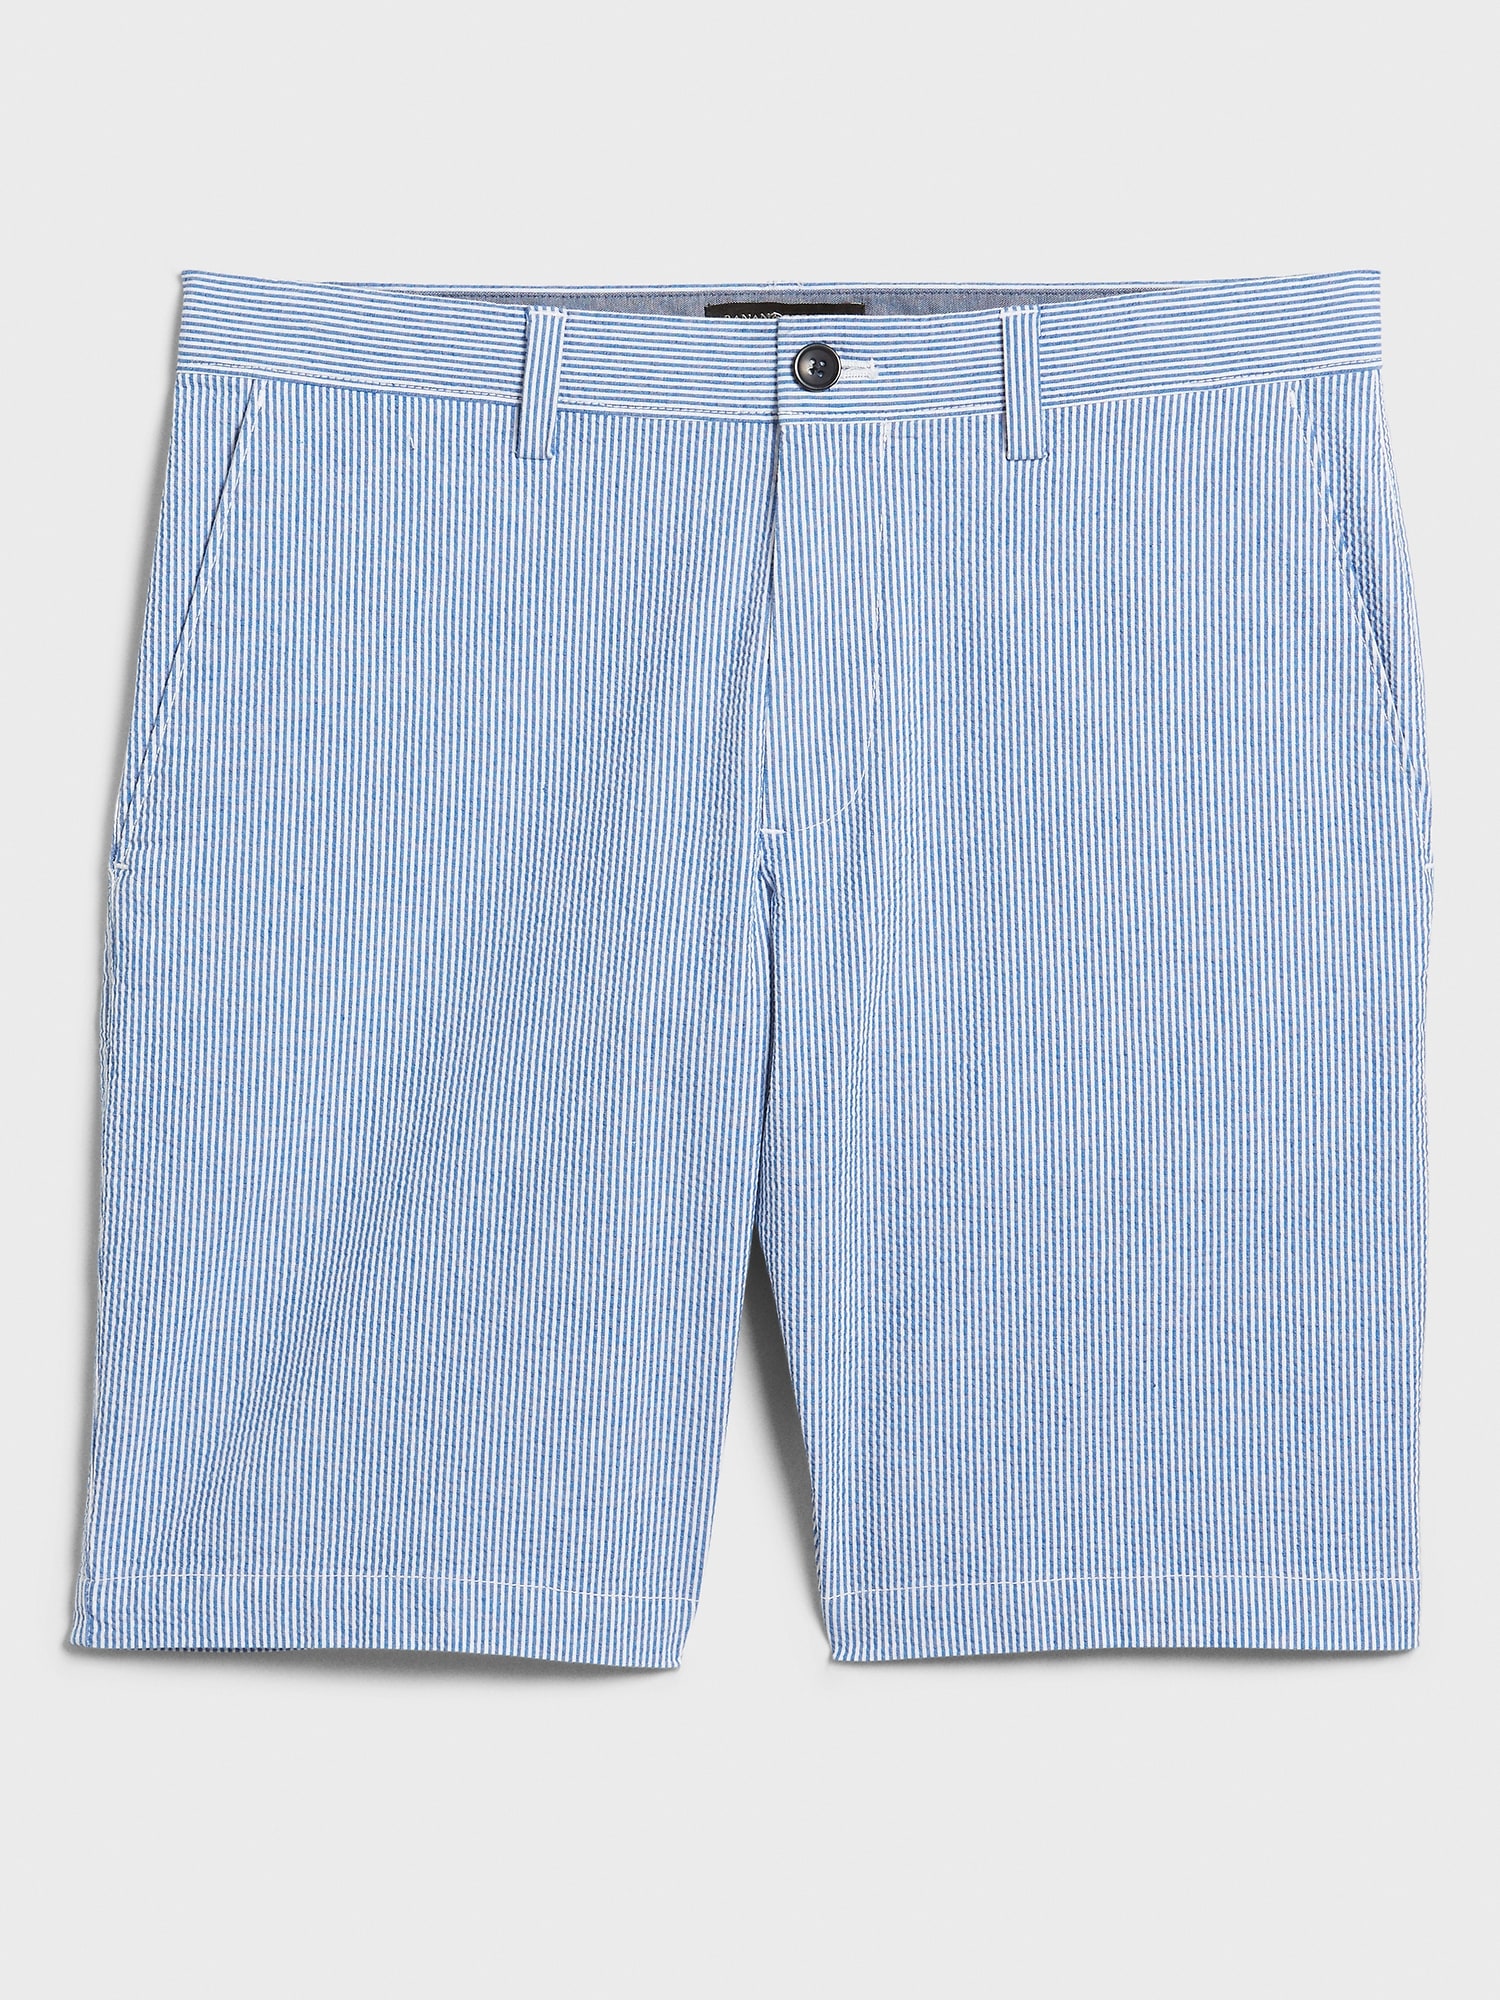 10" Aiden Slim-Fit Seersucker Stretch Shorts